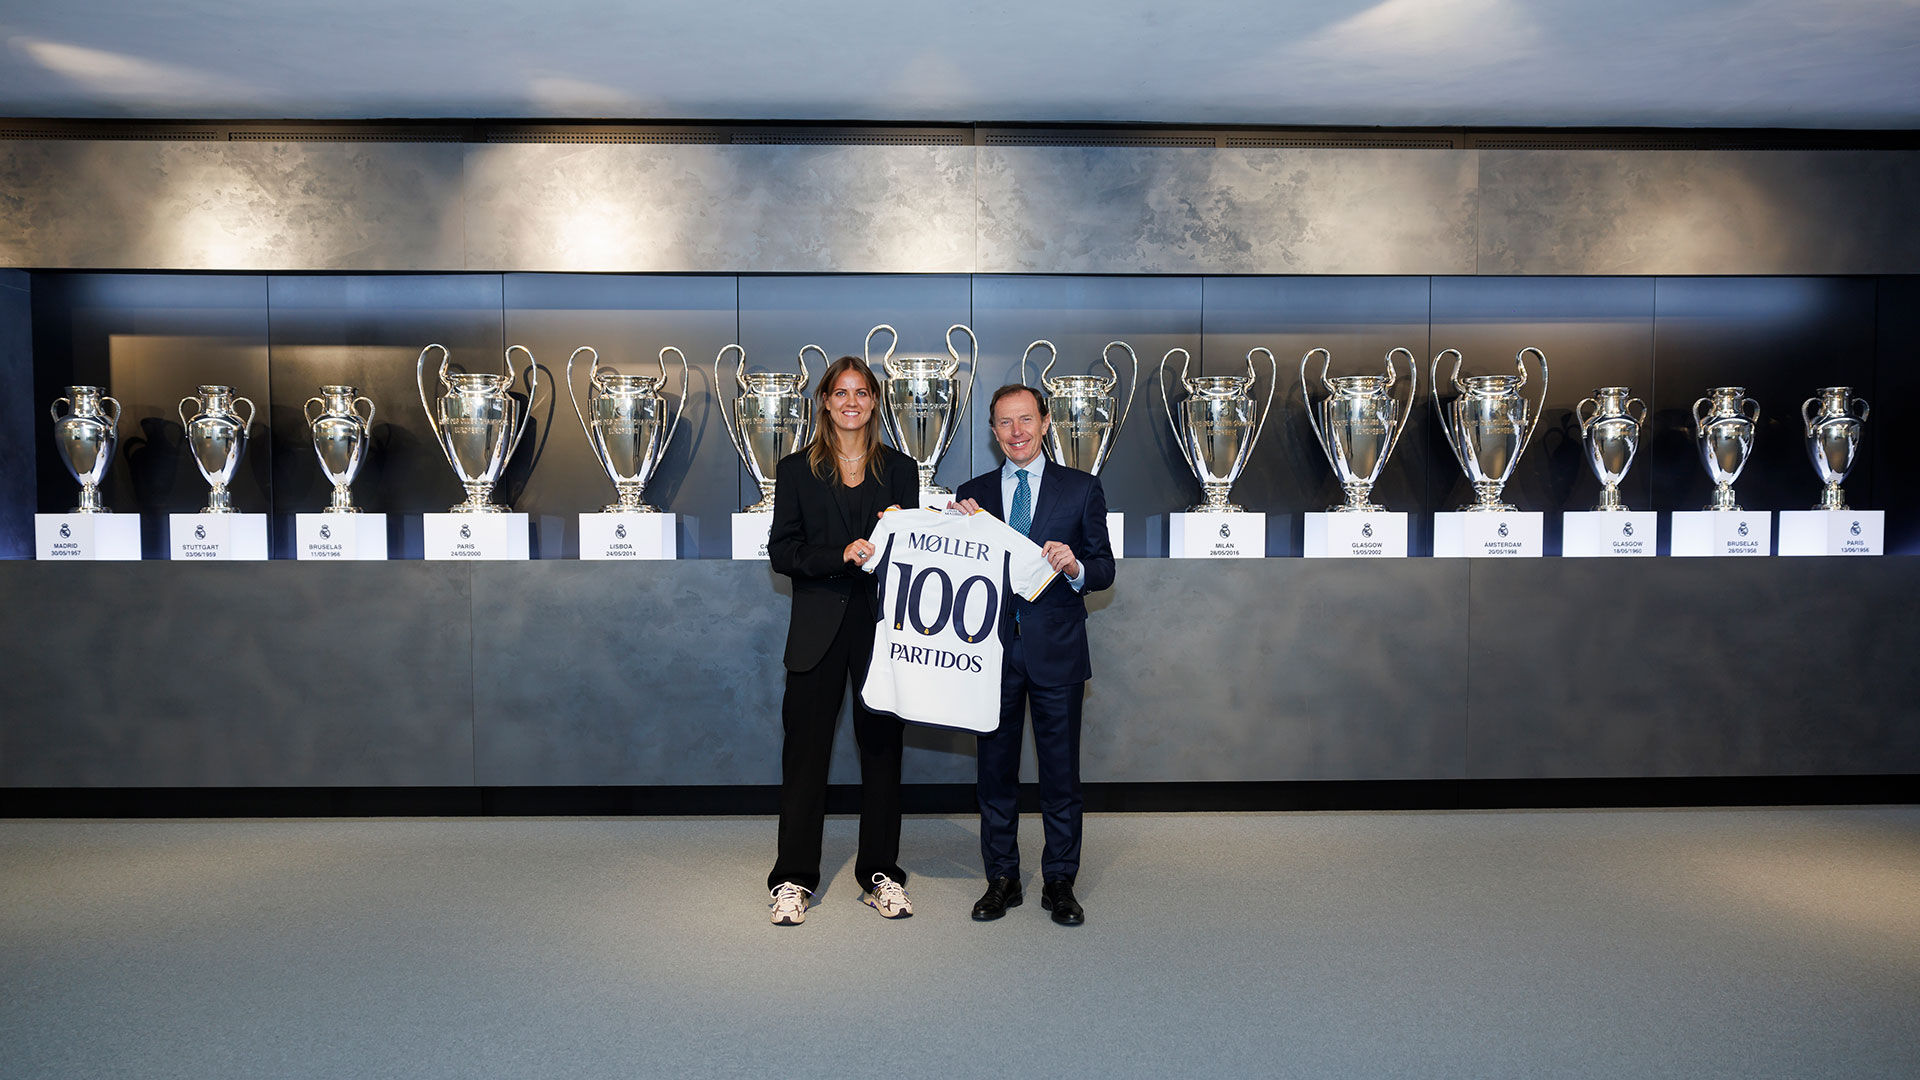 Møller's 100th game for Real Madrid